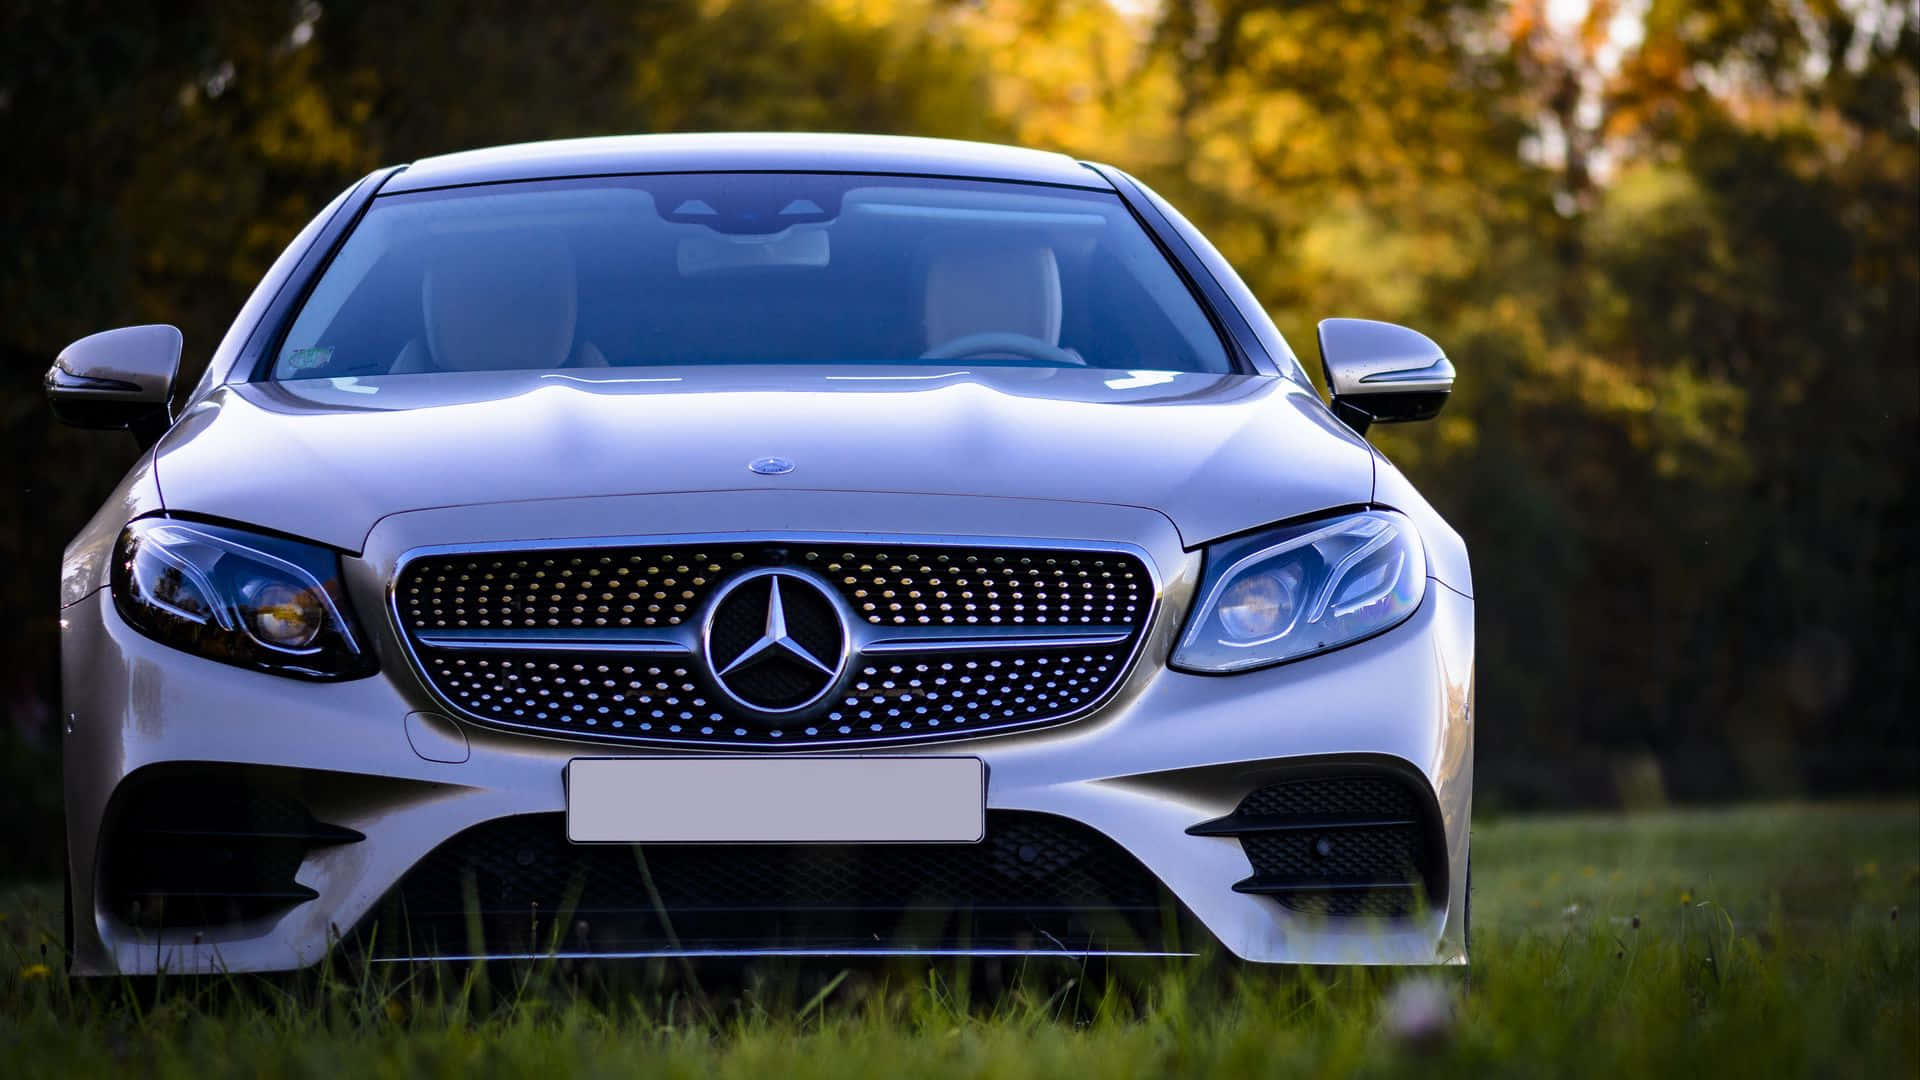 Genießeden Luxuriösen Fahrgenuss Mit Einem Mercedes Benz. Wallpaper